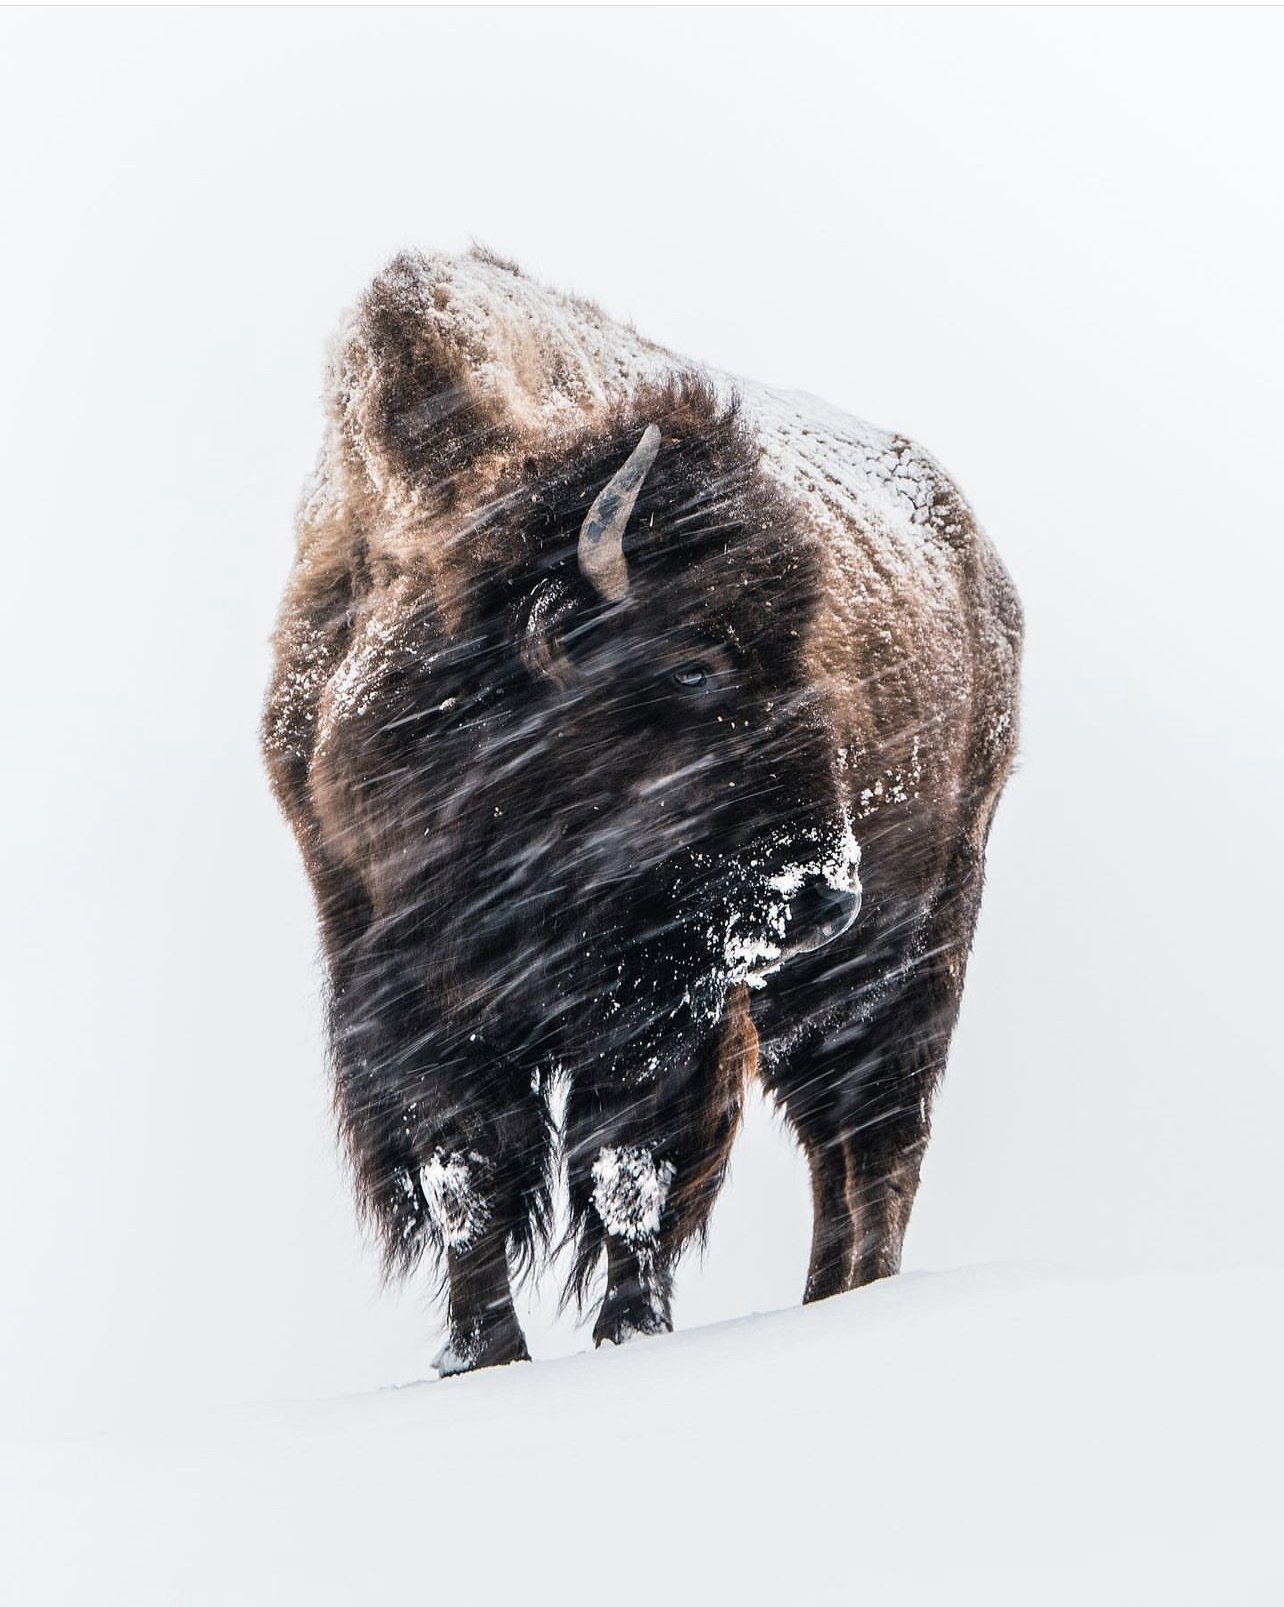 Alexandre Crouzet bison